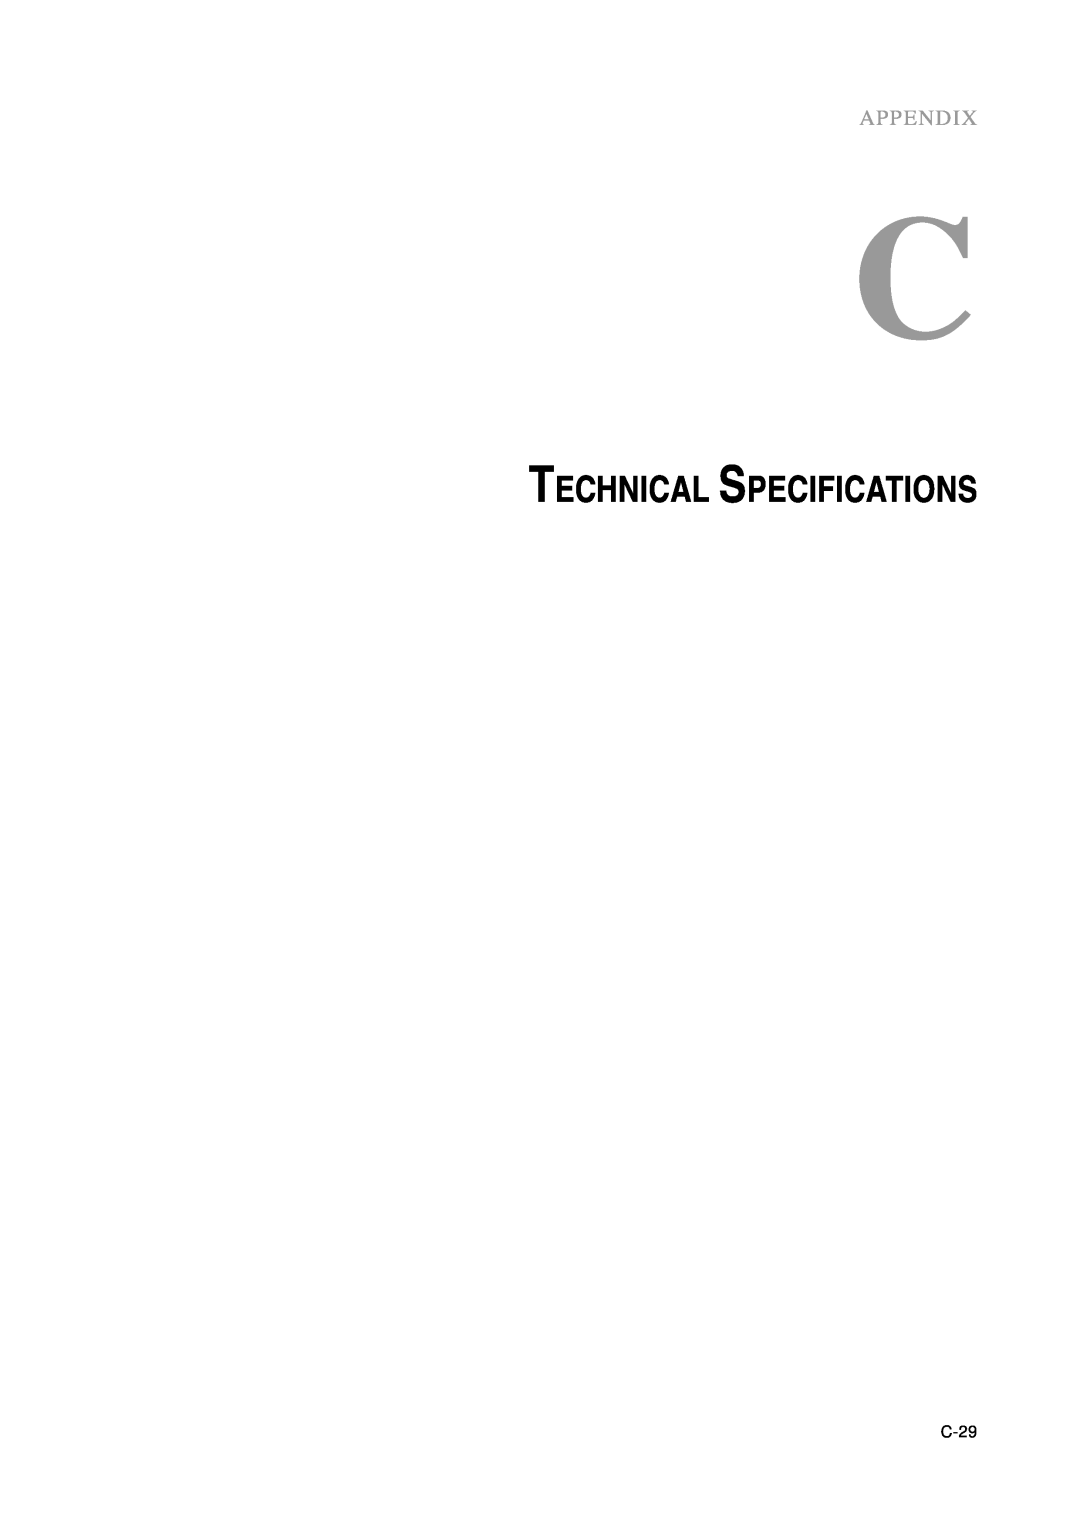 Tyco Electronics B1ET-1215L, ET1215L manual Technical Specifications, Appendix, C-29 